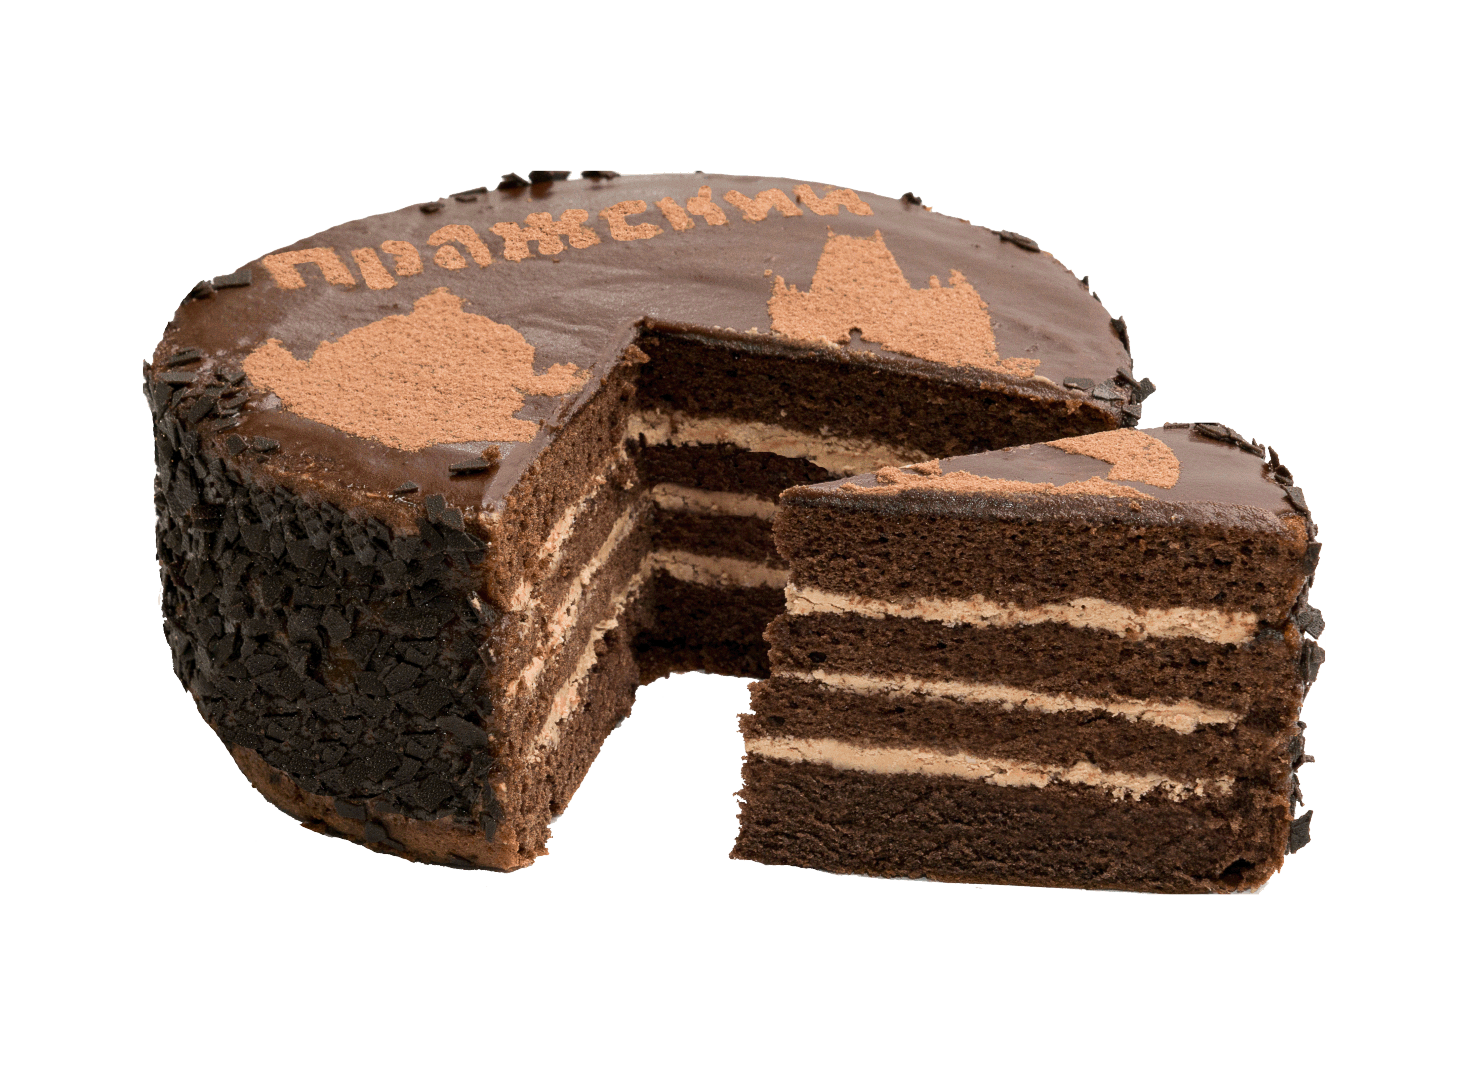 Dark Cake Photos Chocolate Free Download Image PNG Image